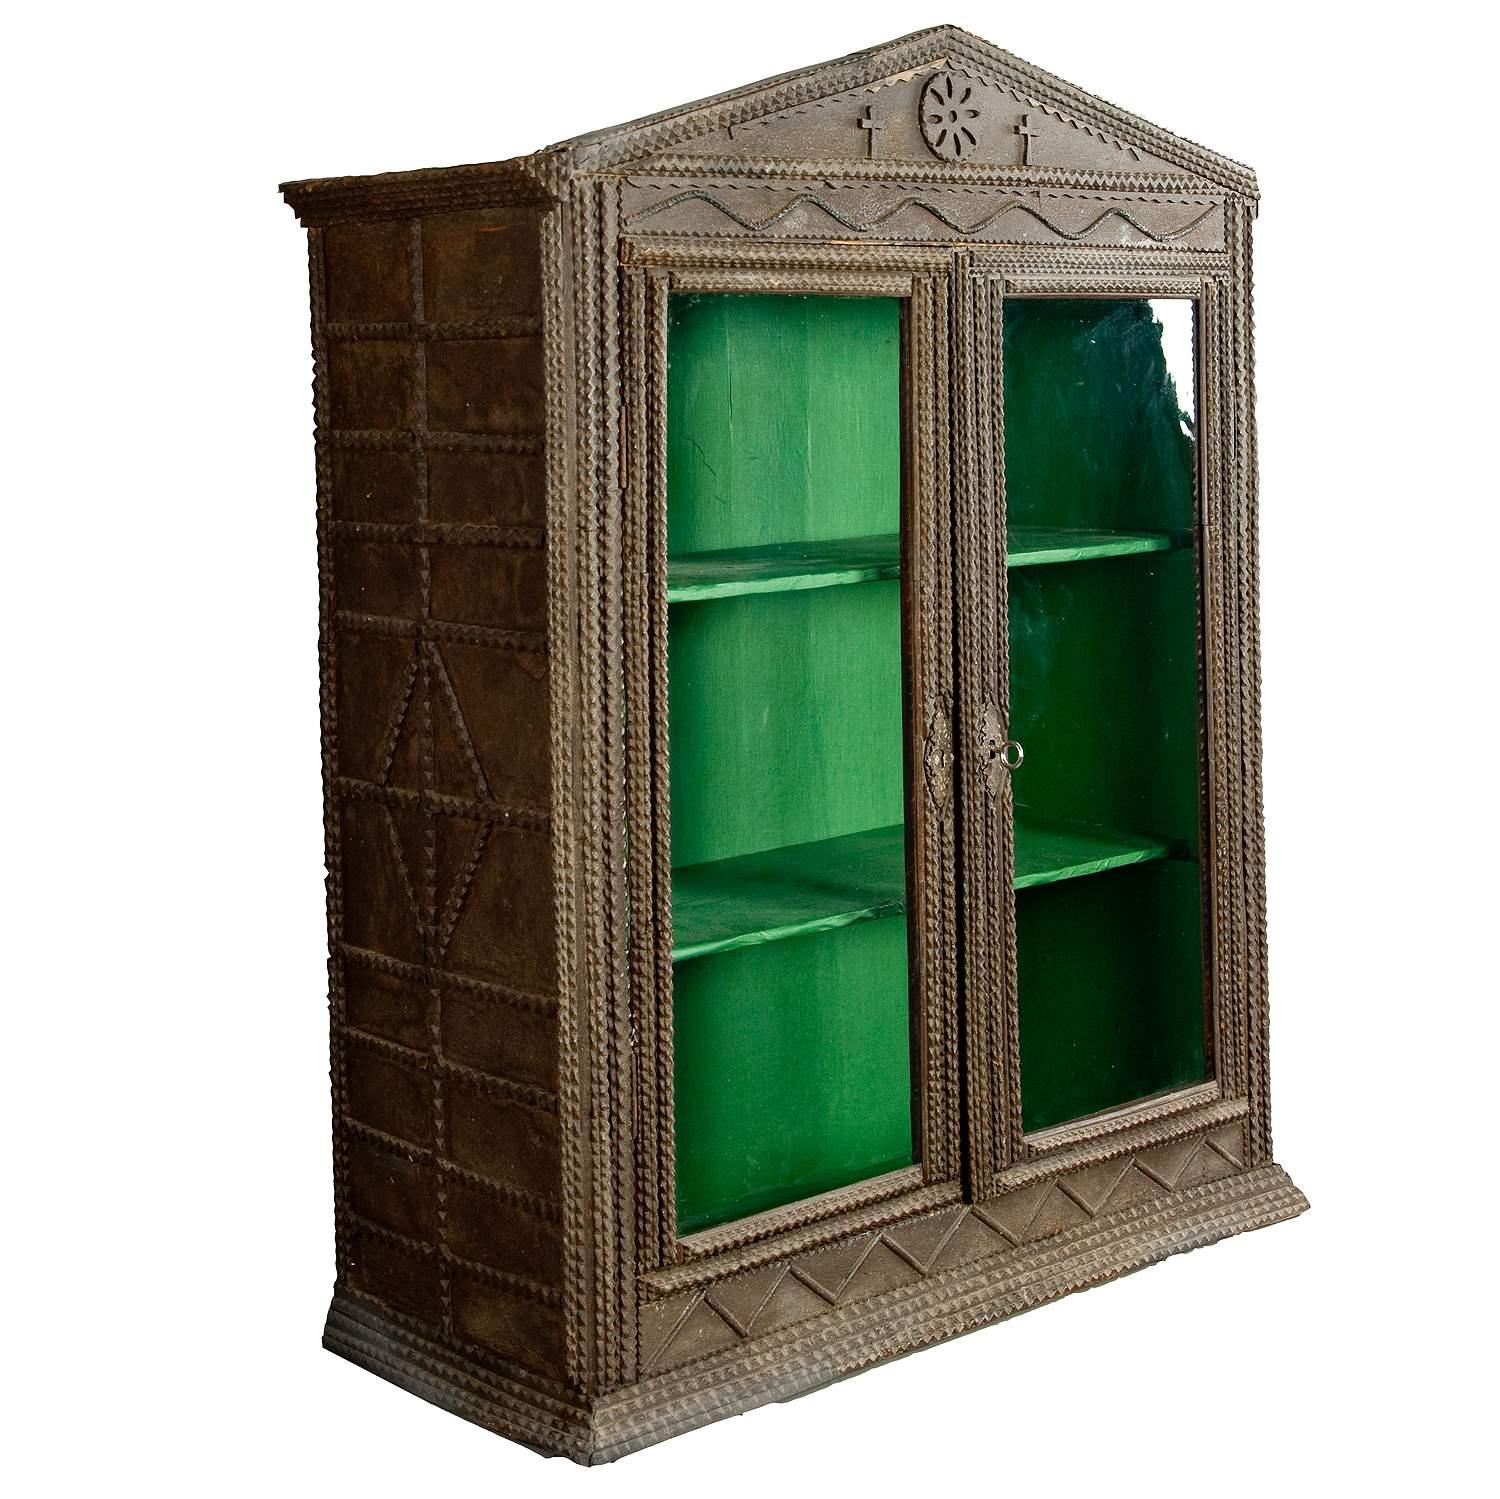 Arte Antiques Tramp Art Cabinet ca. 1900

L'armoire en bois pour le tramp art est décorée de riches sculptures. L'intérieur est recouvert de papier vert. Il a été exécuté en Allemagne vers 1900.

Mesures :
Largeur : 31.5